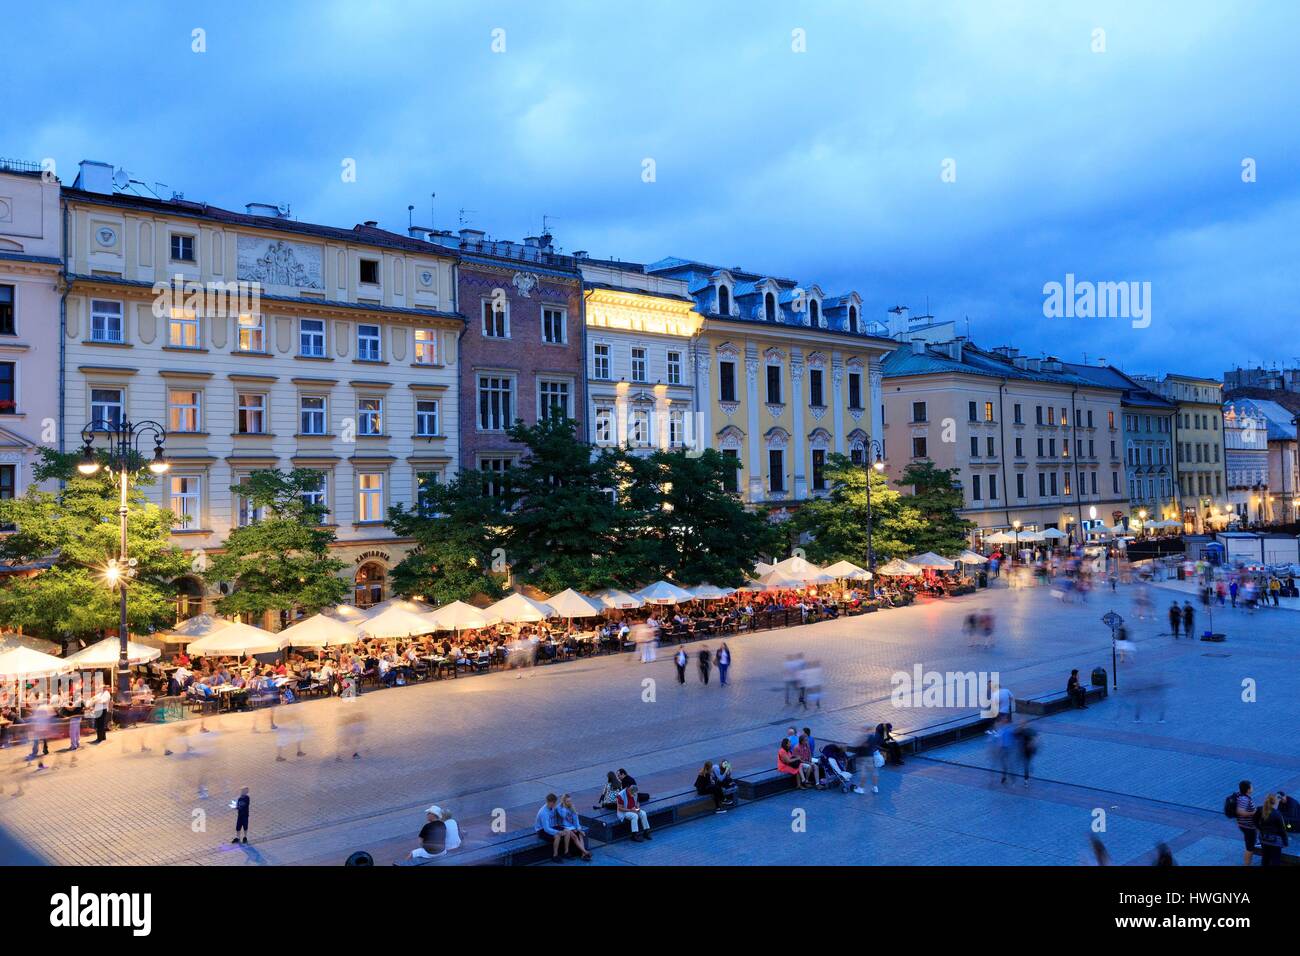 Polen, Kleinpolen, Krakow, Stare Miasto Bezirk, Weltkulturerbe von UNESCO, Altstadt, Marktplatz Stockfoto